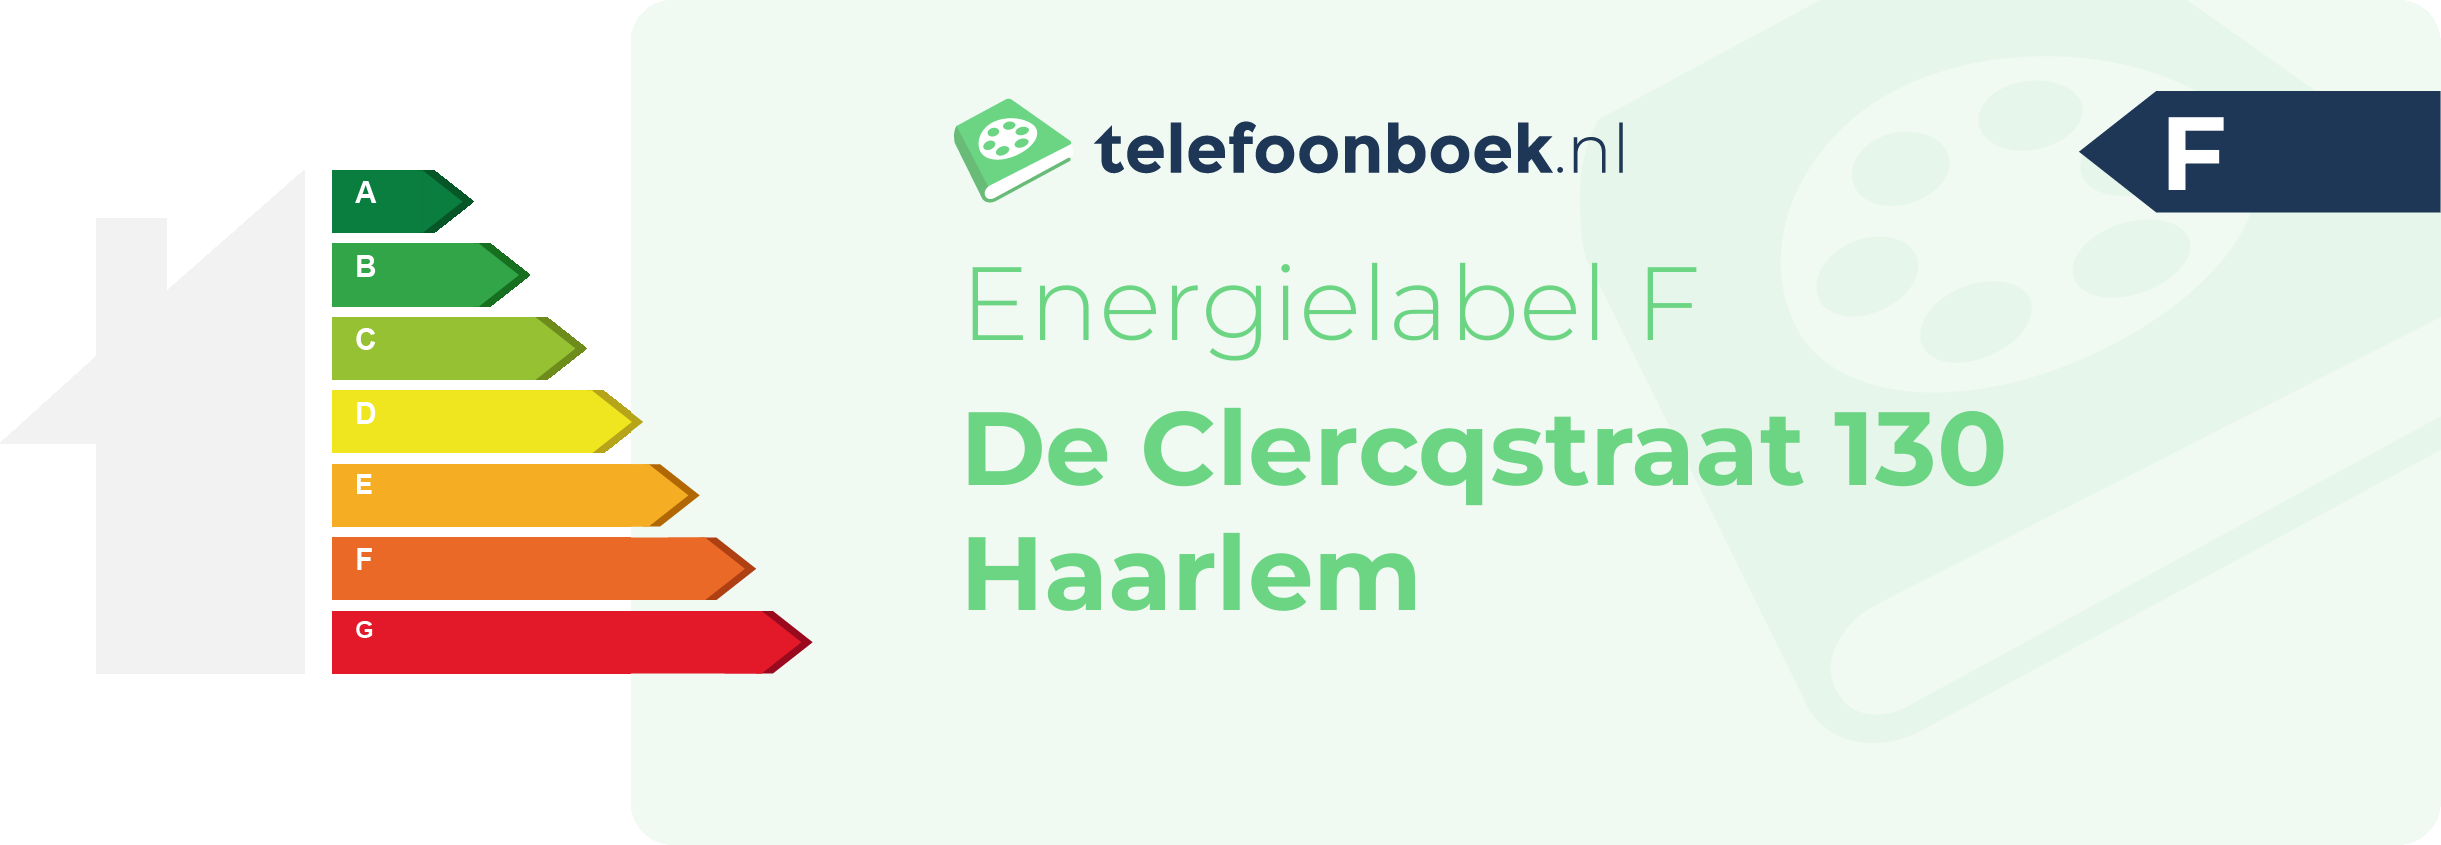 Energielabel De Clercqstraat 130 Haarlem